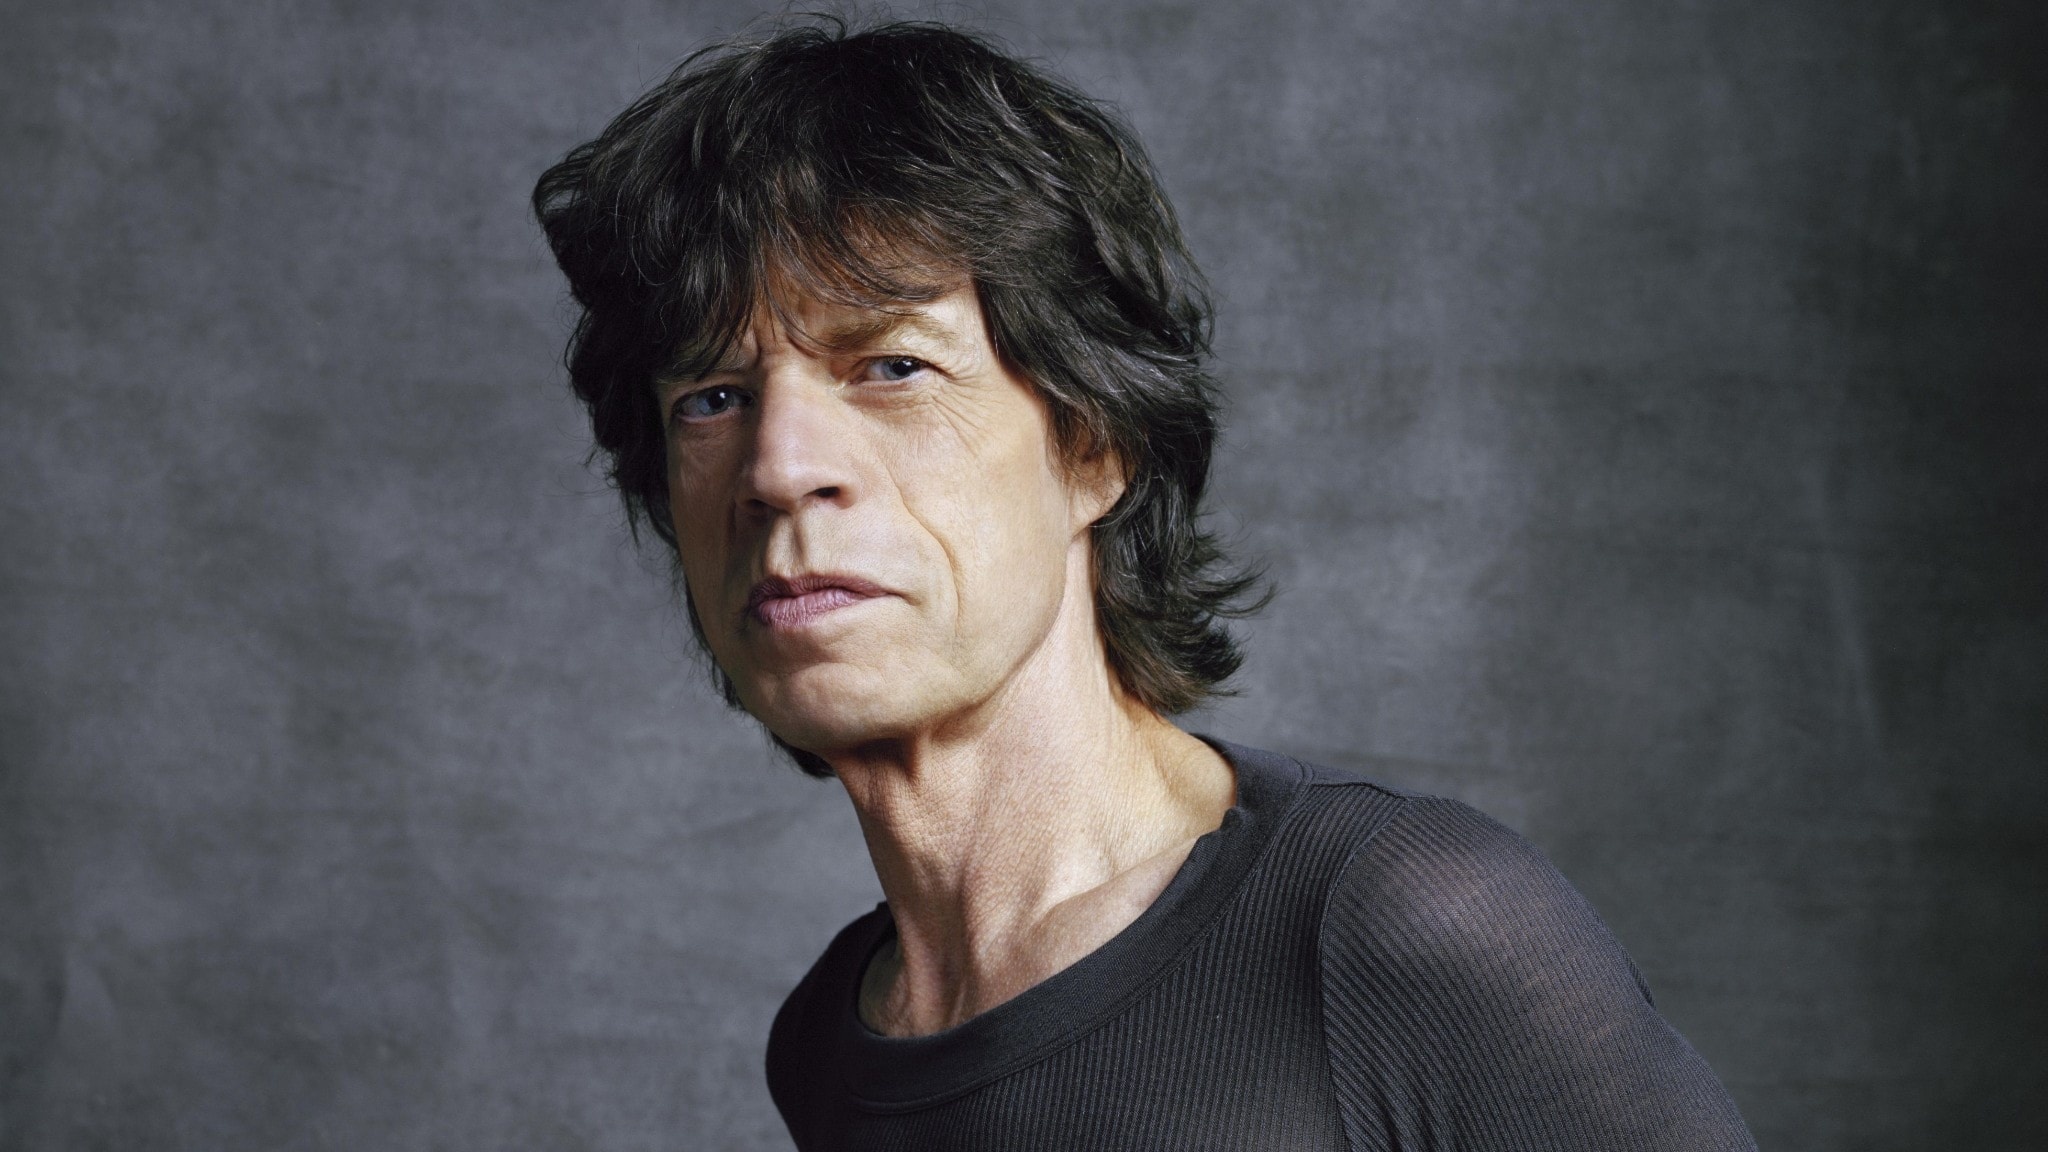 Mick Jagger, Rolling Stones career, 70s memories, Nord News interview, 2050x1160 HD Desktop